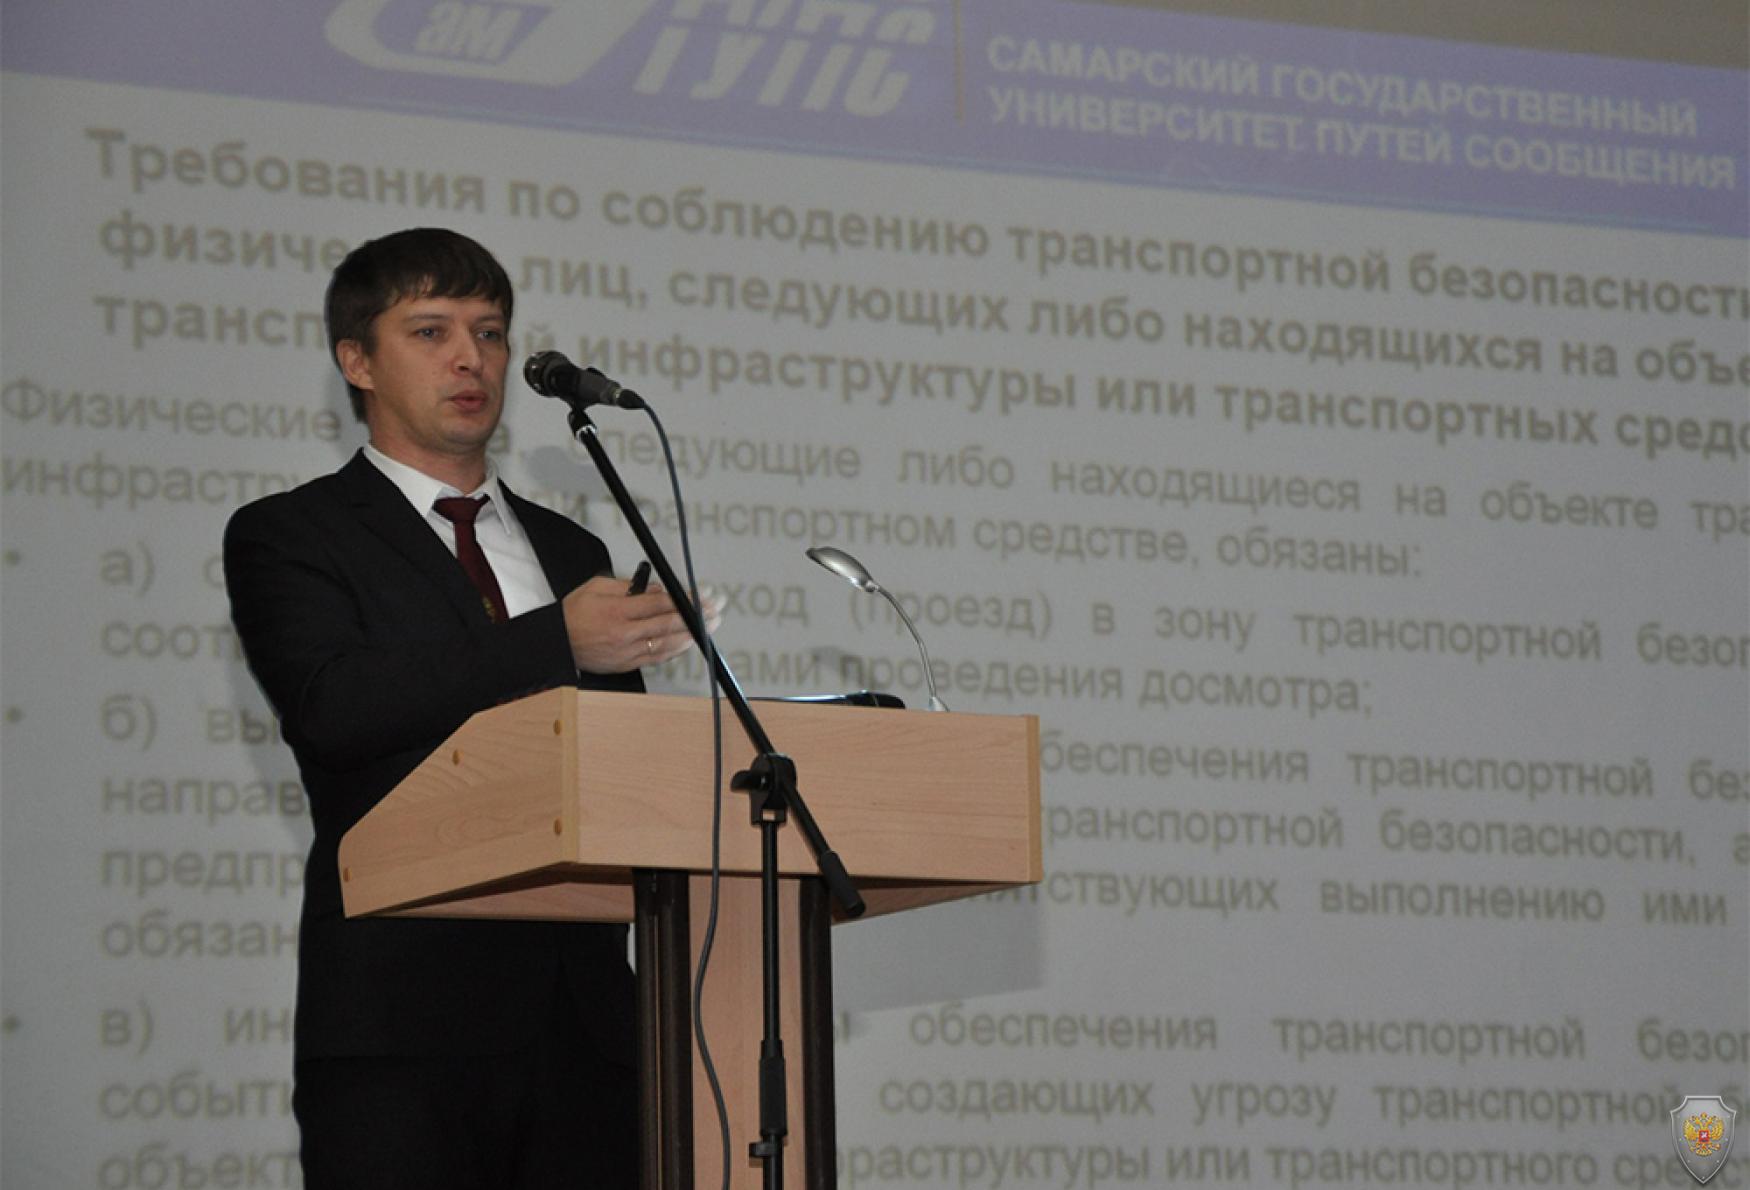 Выступление представителя Центра транспортной безопасности Самарского государственного университета путей сообщения